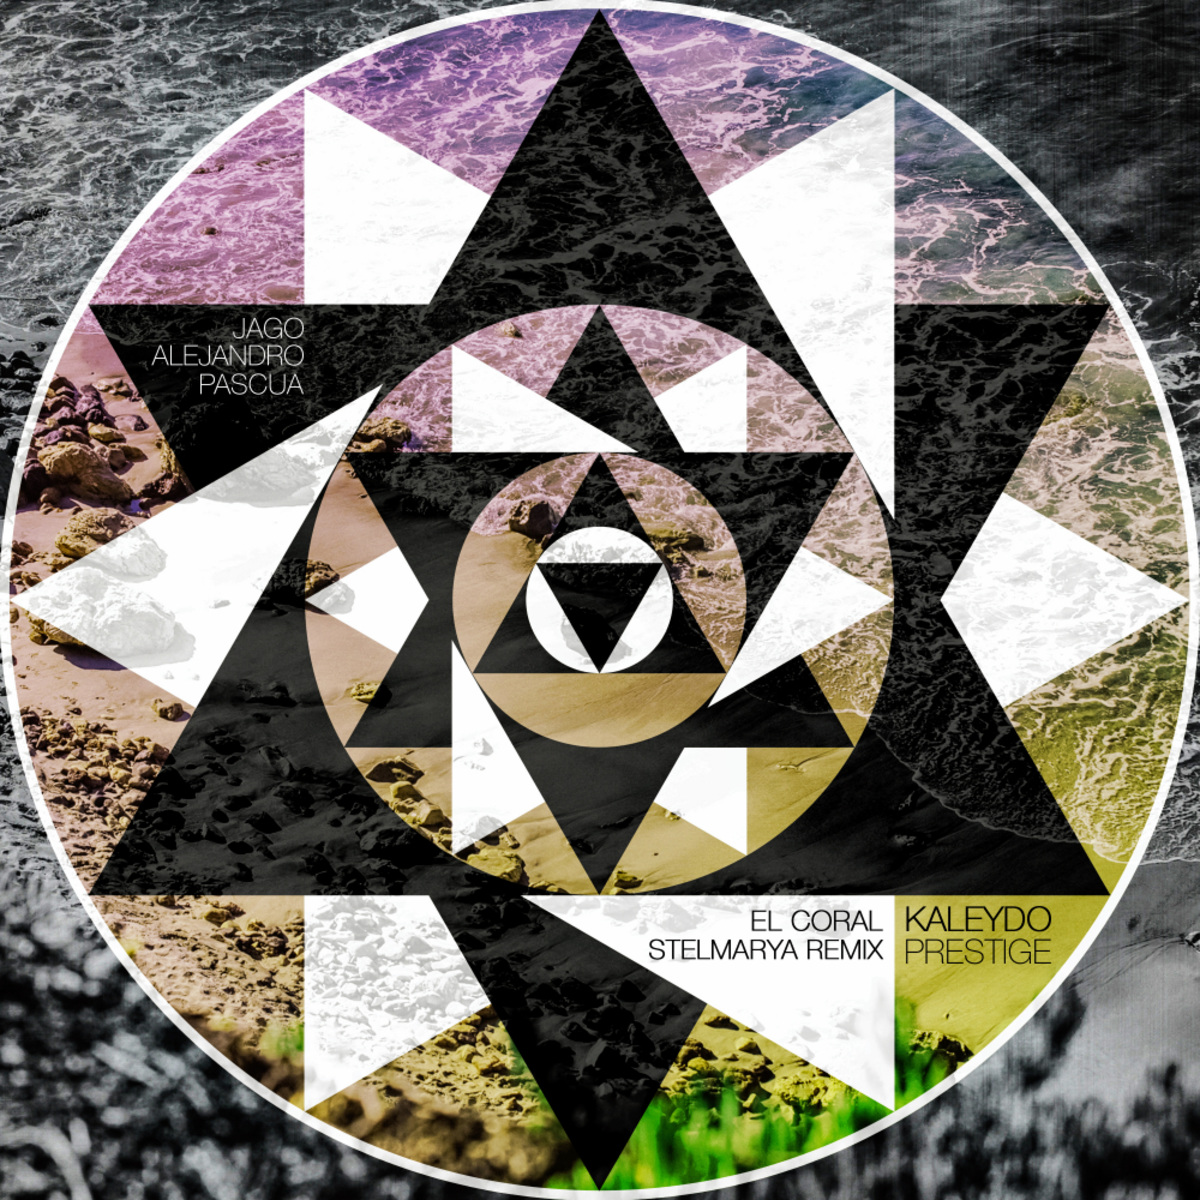 Jago Alejandro Pascua - El Coral (Stelmarya Remix) / Kaleydo Prestige